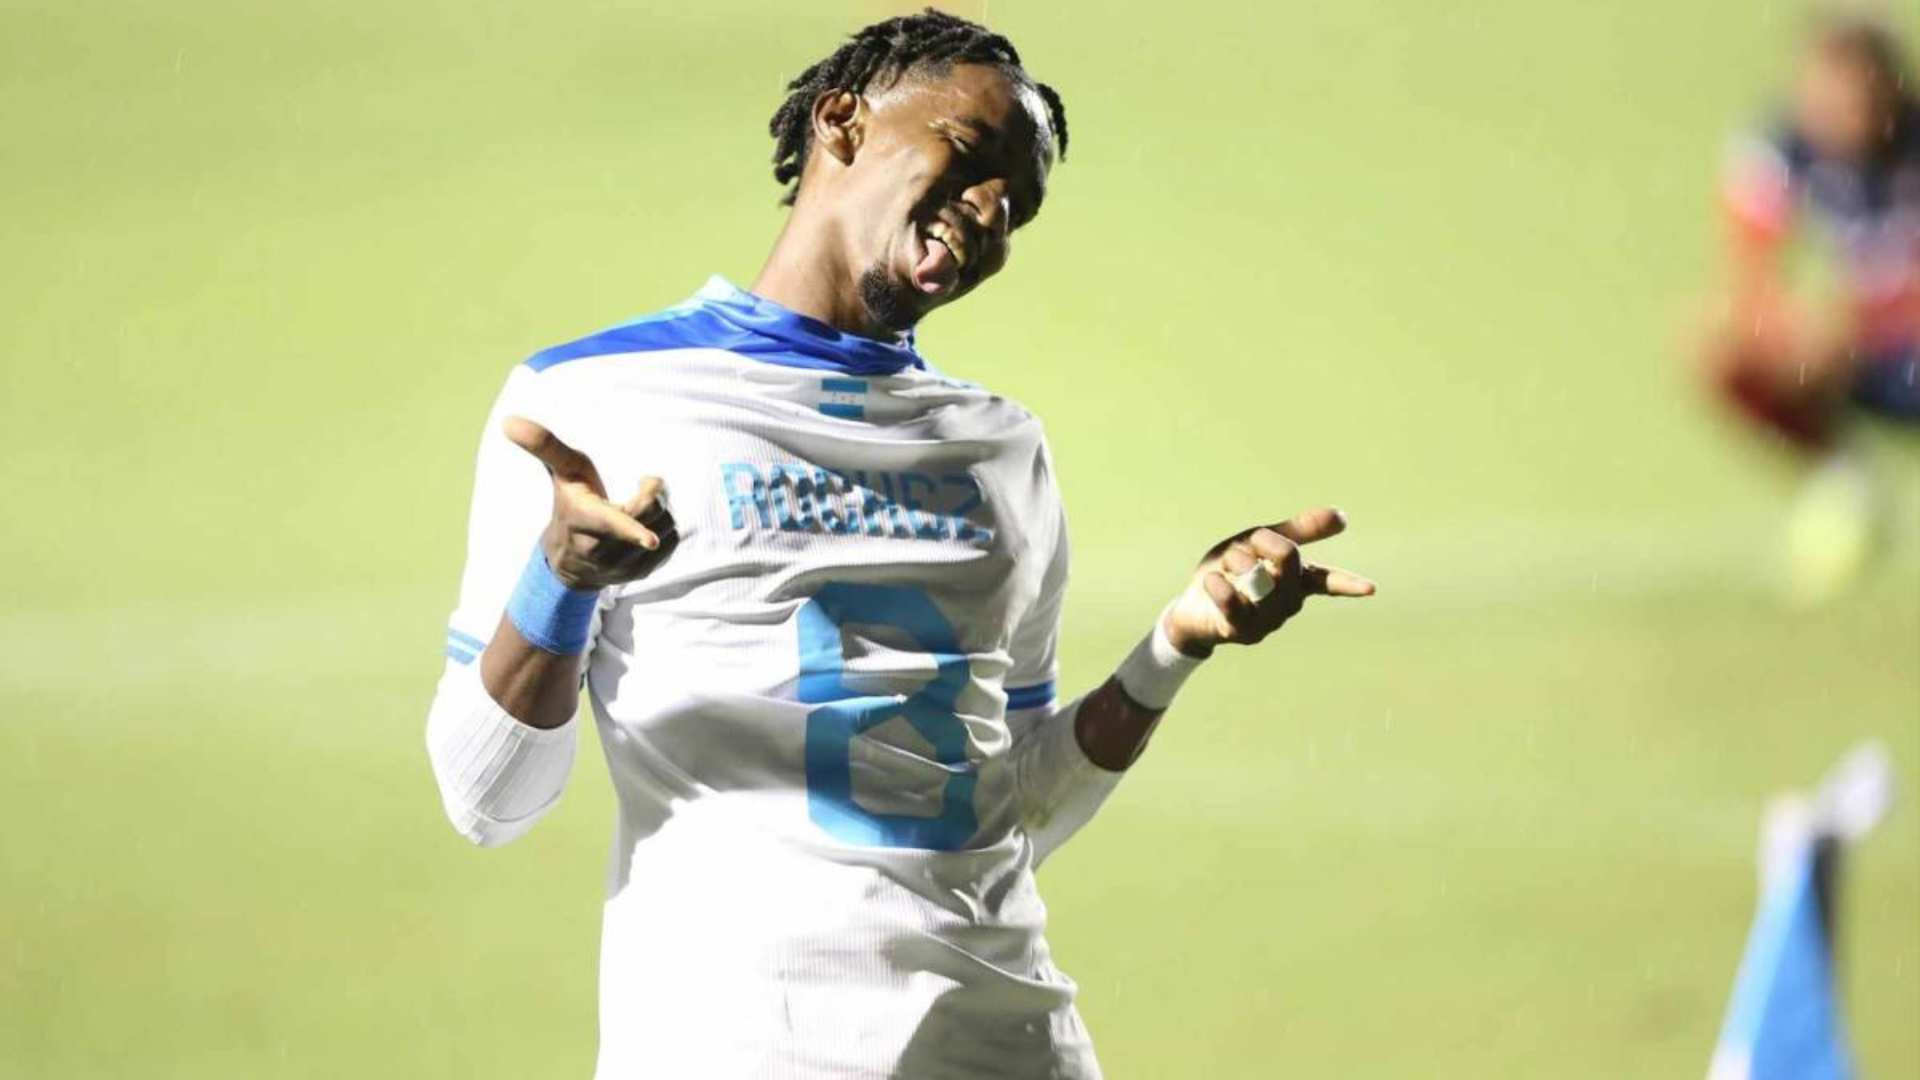 “Es un anhelo desde niño”: Delantero Bryan Rochez aspira que Honduras clasifique a la Copa América